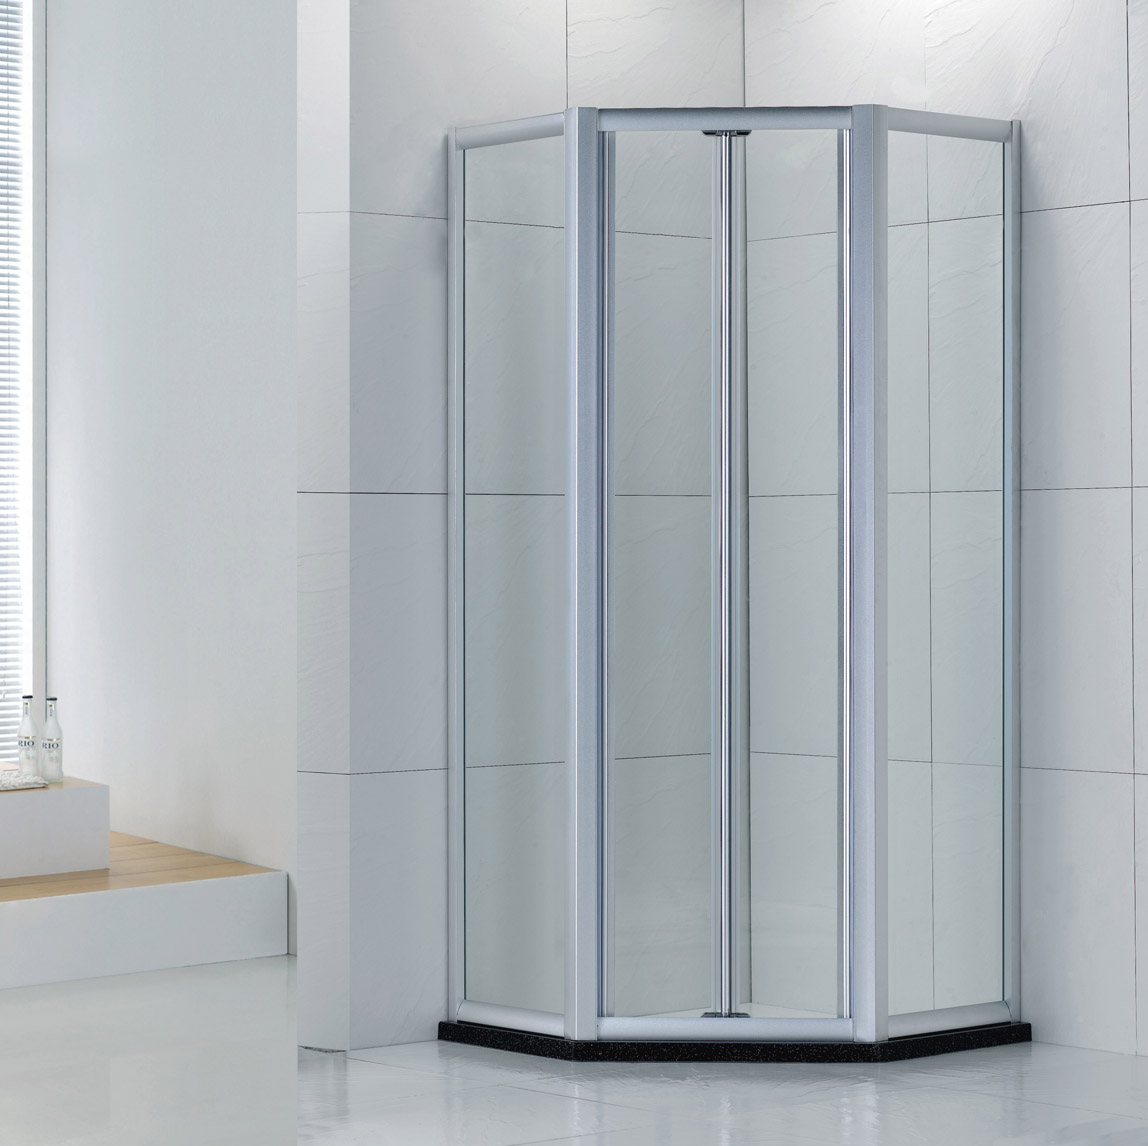 2015较新款钻石型浴室门 铝材折叠门设计 时尚简易淋浴门LR007